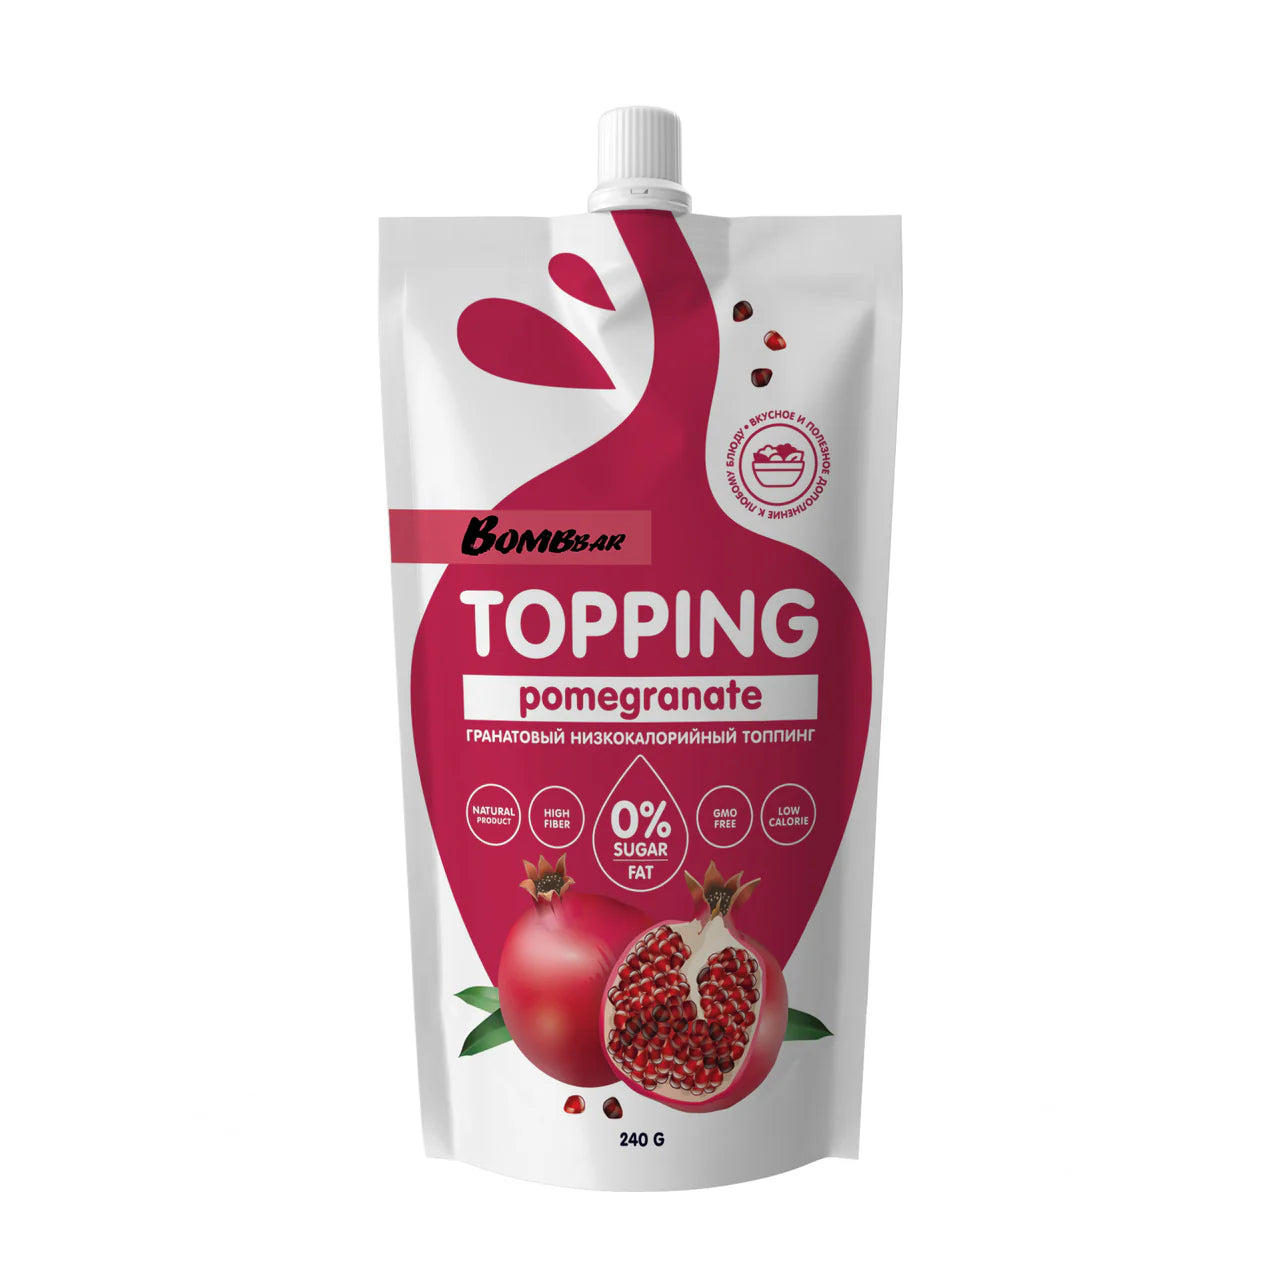 Bombbar Sweet Toppings 240g - Pomegranate